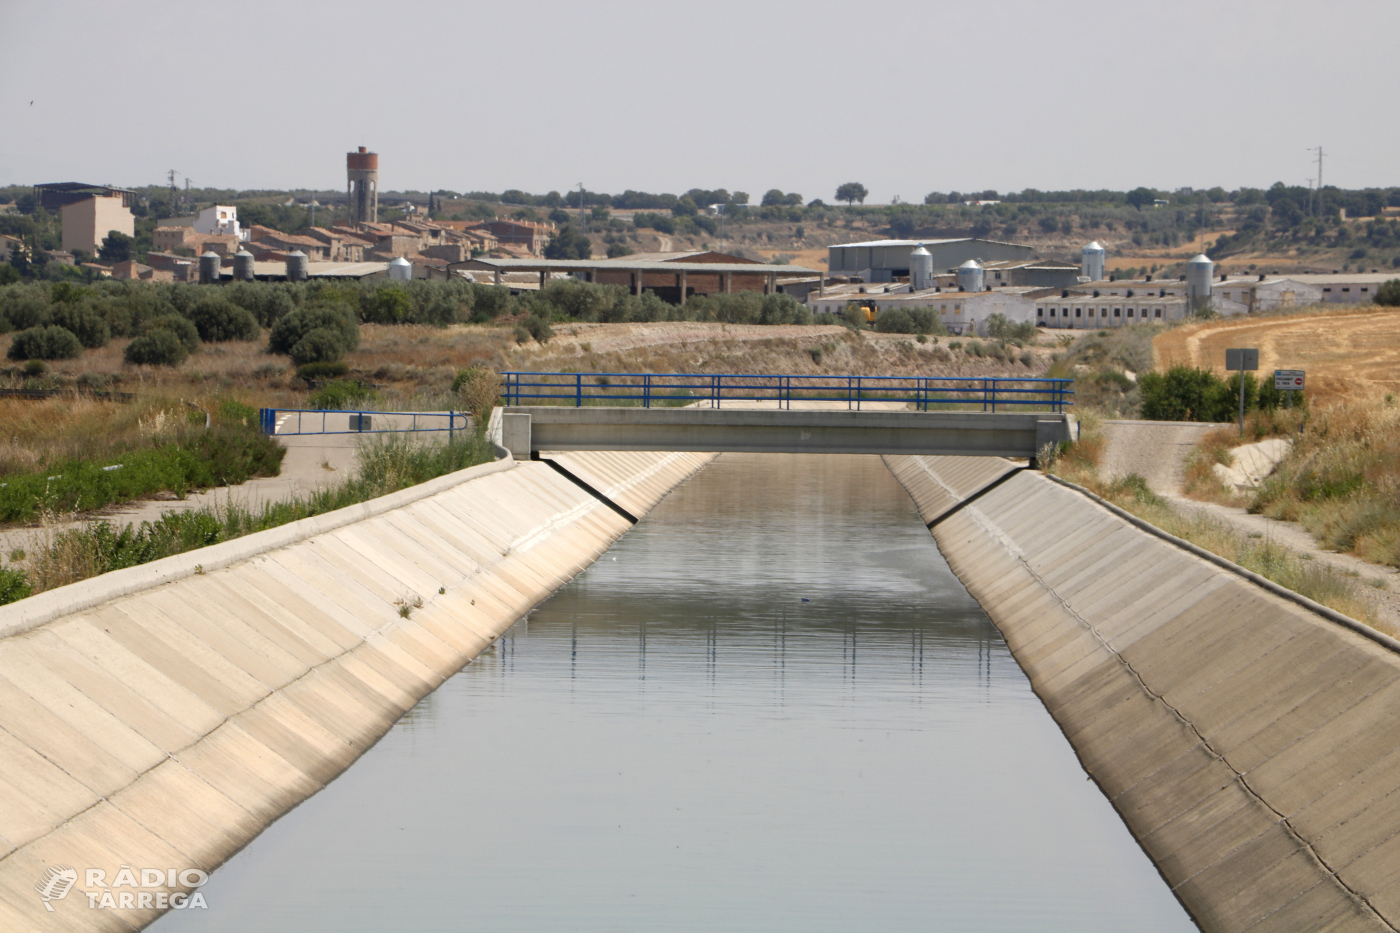 Els regants del Segarra-Garrigues s'oposen a fer servir zones de reg per instal·lar parcs fotovoltaics